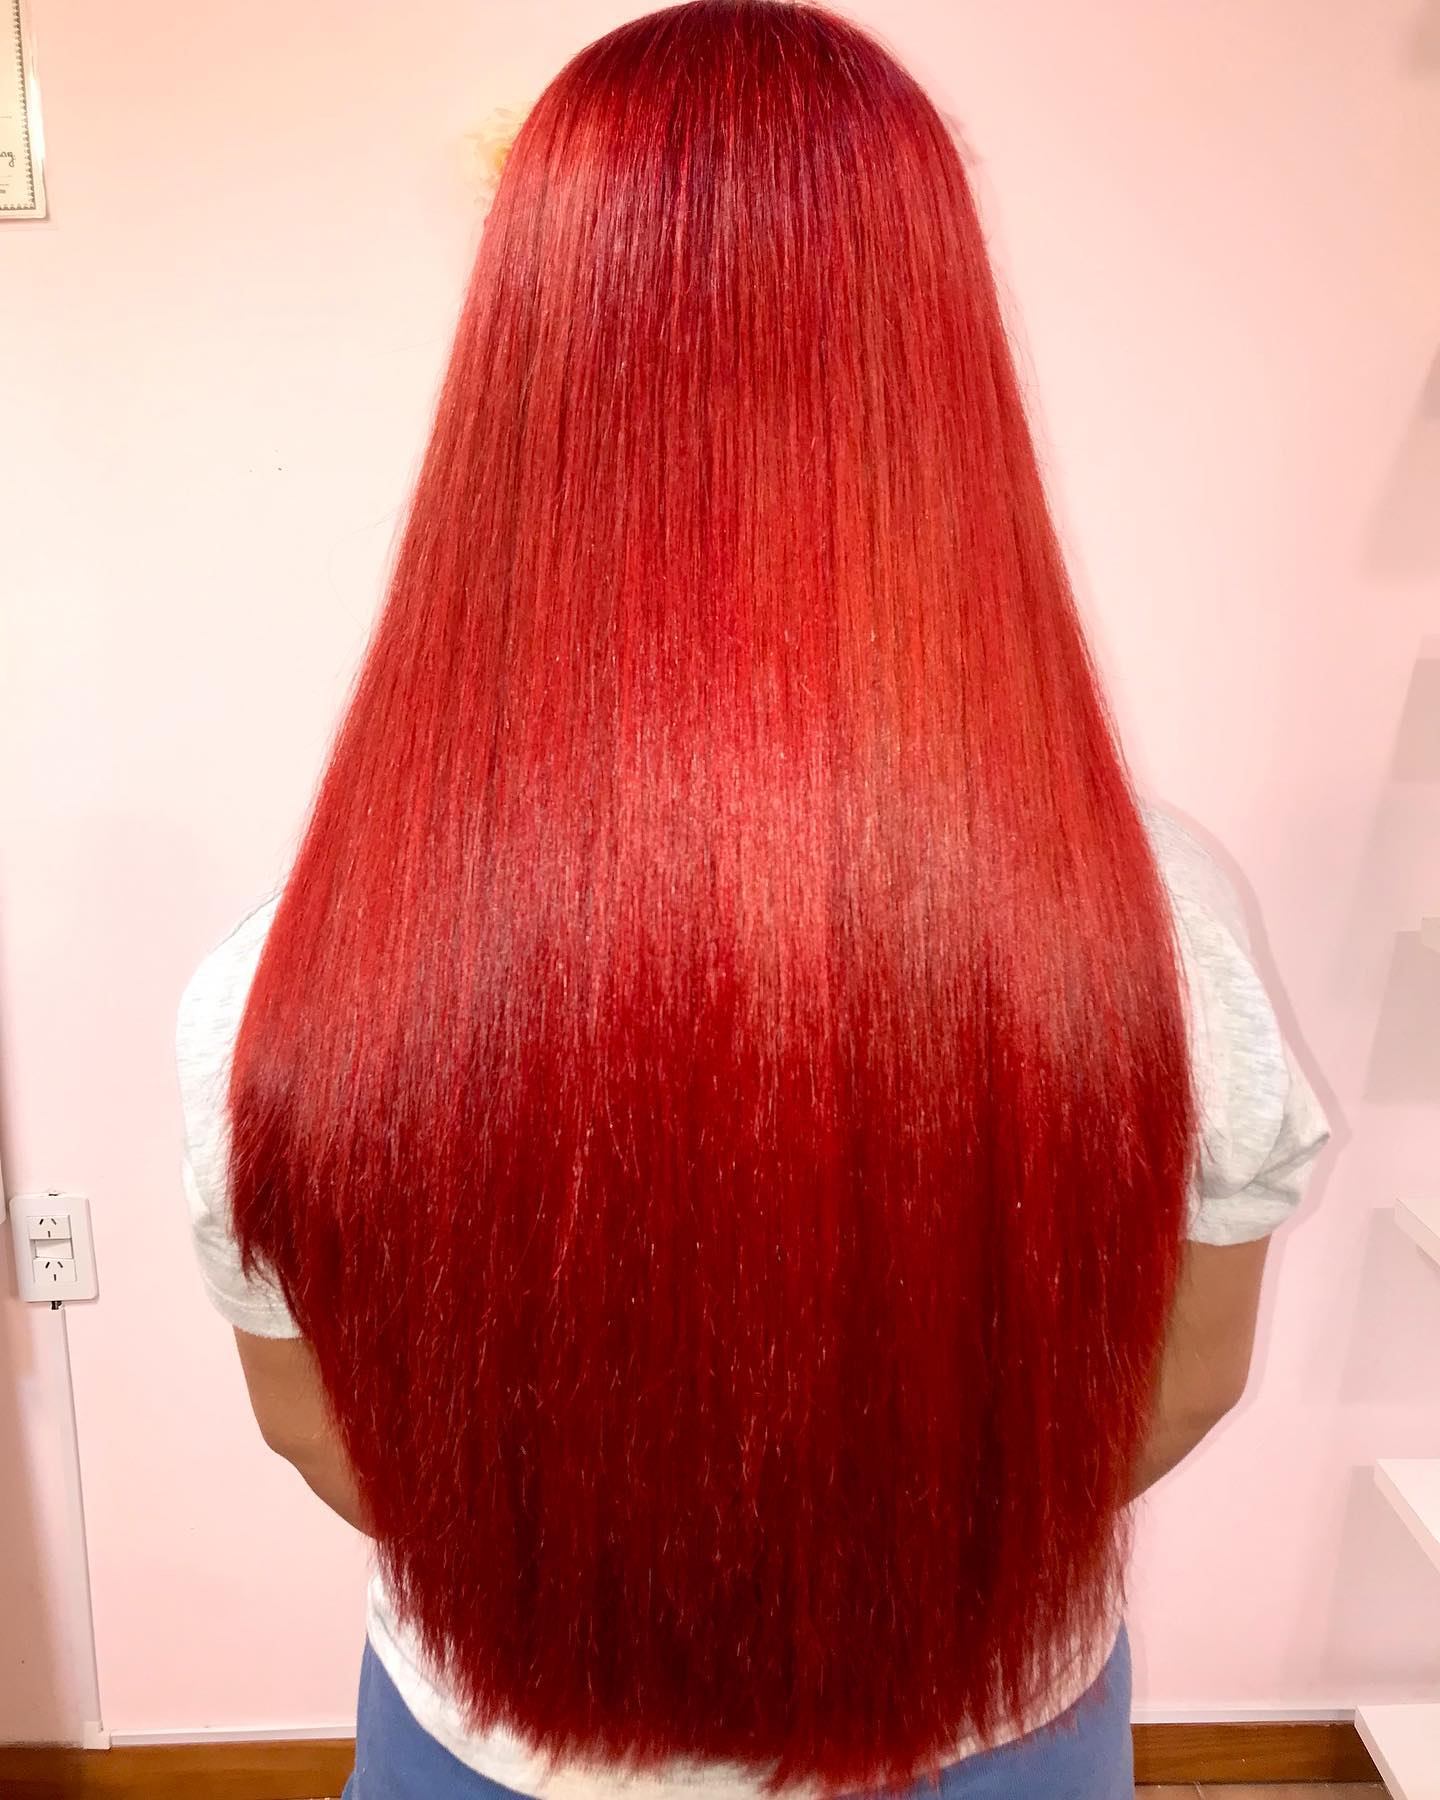 bright red hair color 140 Bright Red Hair Color | Bright red hair color for dark hair | Bright red hair color ideas Bright Red Hair Color